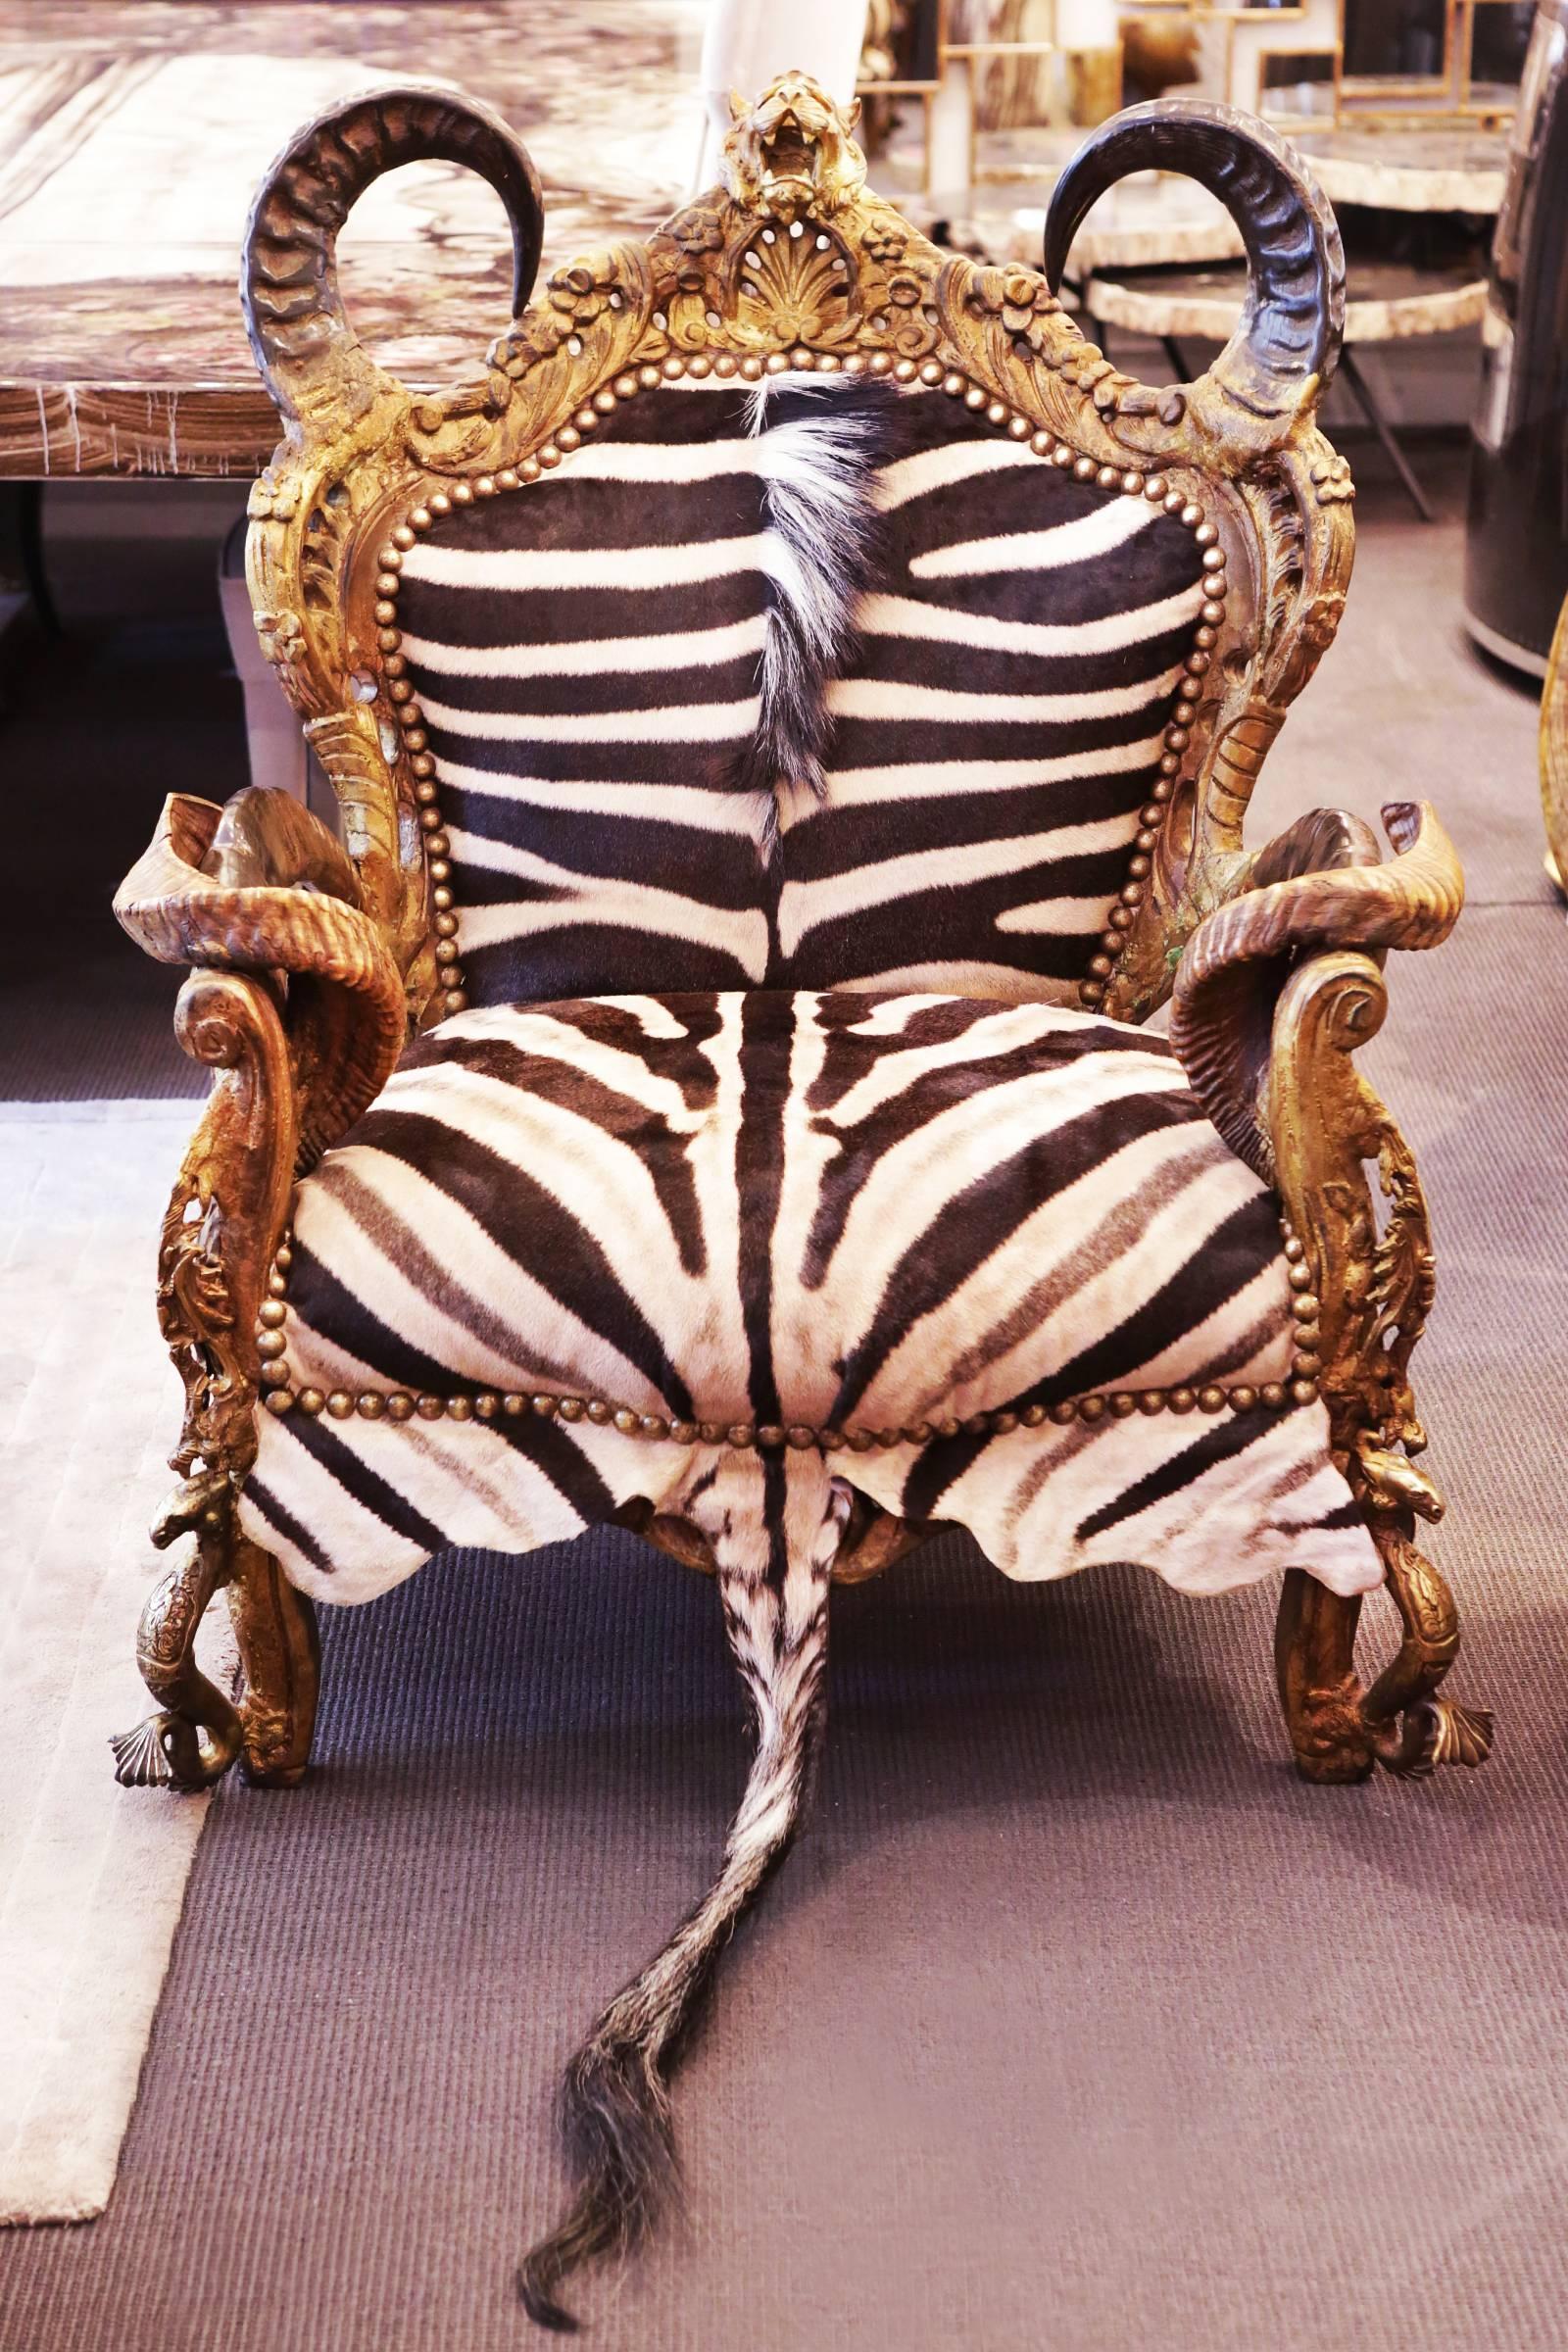 zebra skin chair